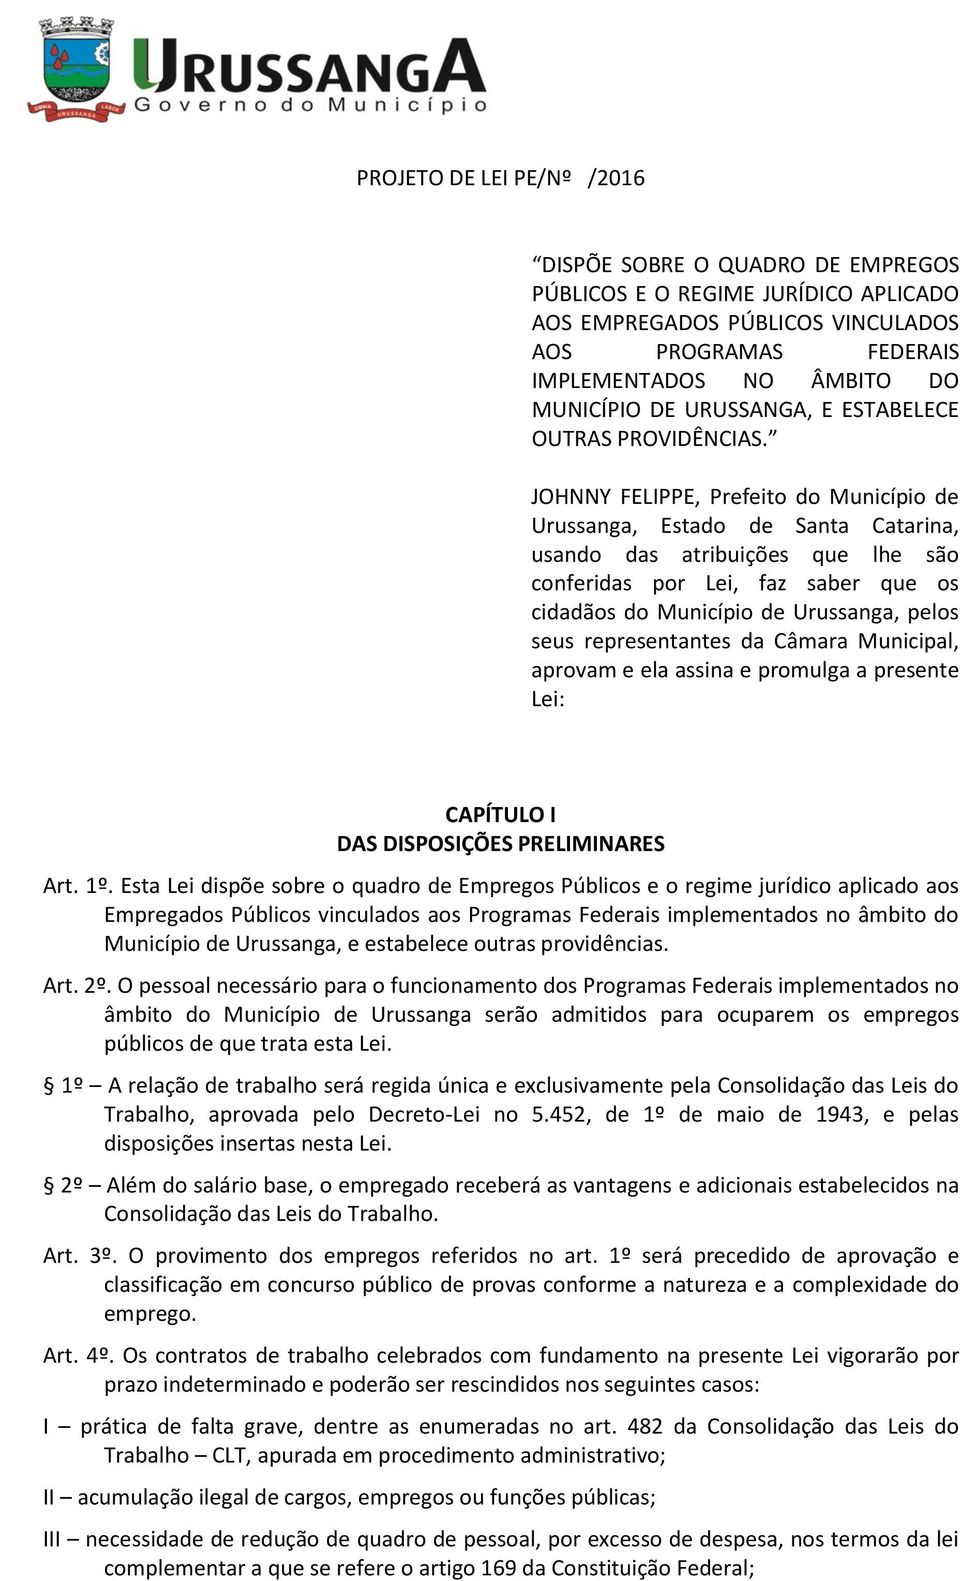 JOHNNY FELIPPE, Prefeito do Município de Urussanga, Estado de Santa Catarina, usando das atribuições que lhe são conferidas por Lei, faz saber que os cidadãos do Município de Urussanga, pelos seus